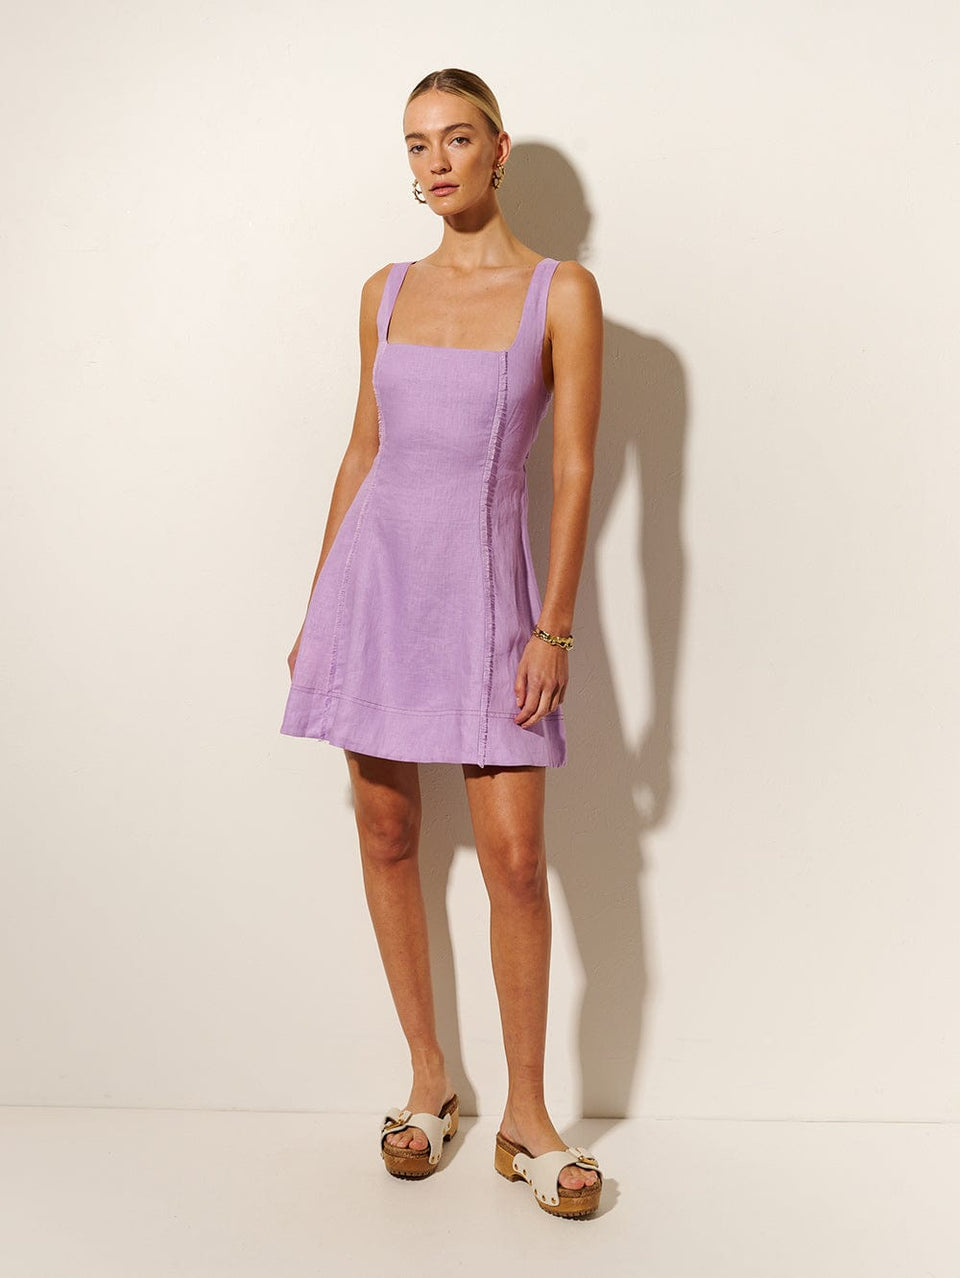 Ellie Strappy Mini Dress KIVARI | Model wears purple mini dress side view